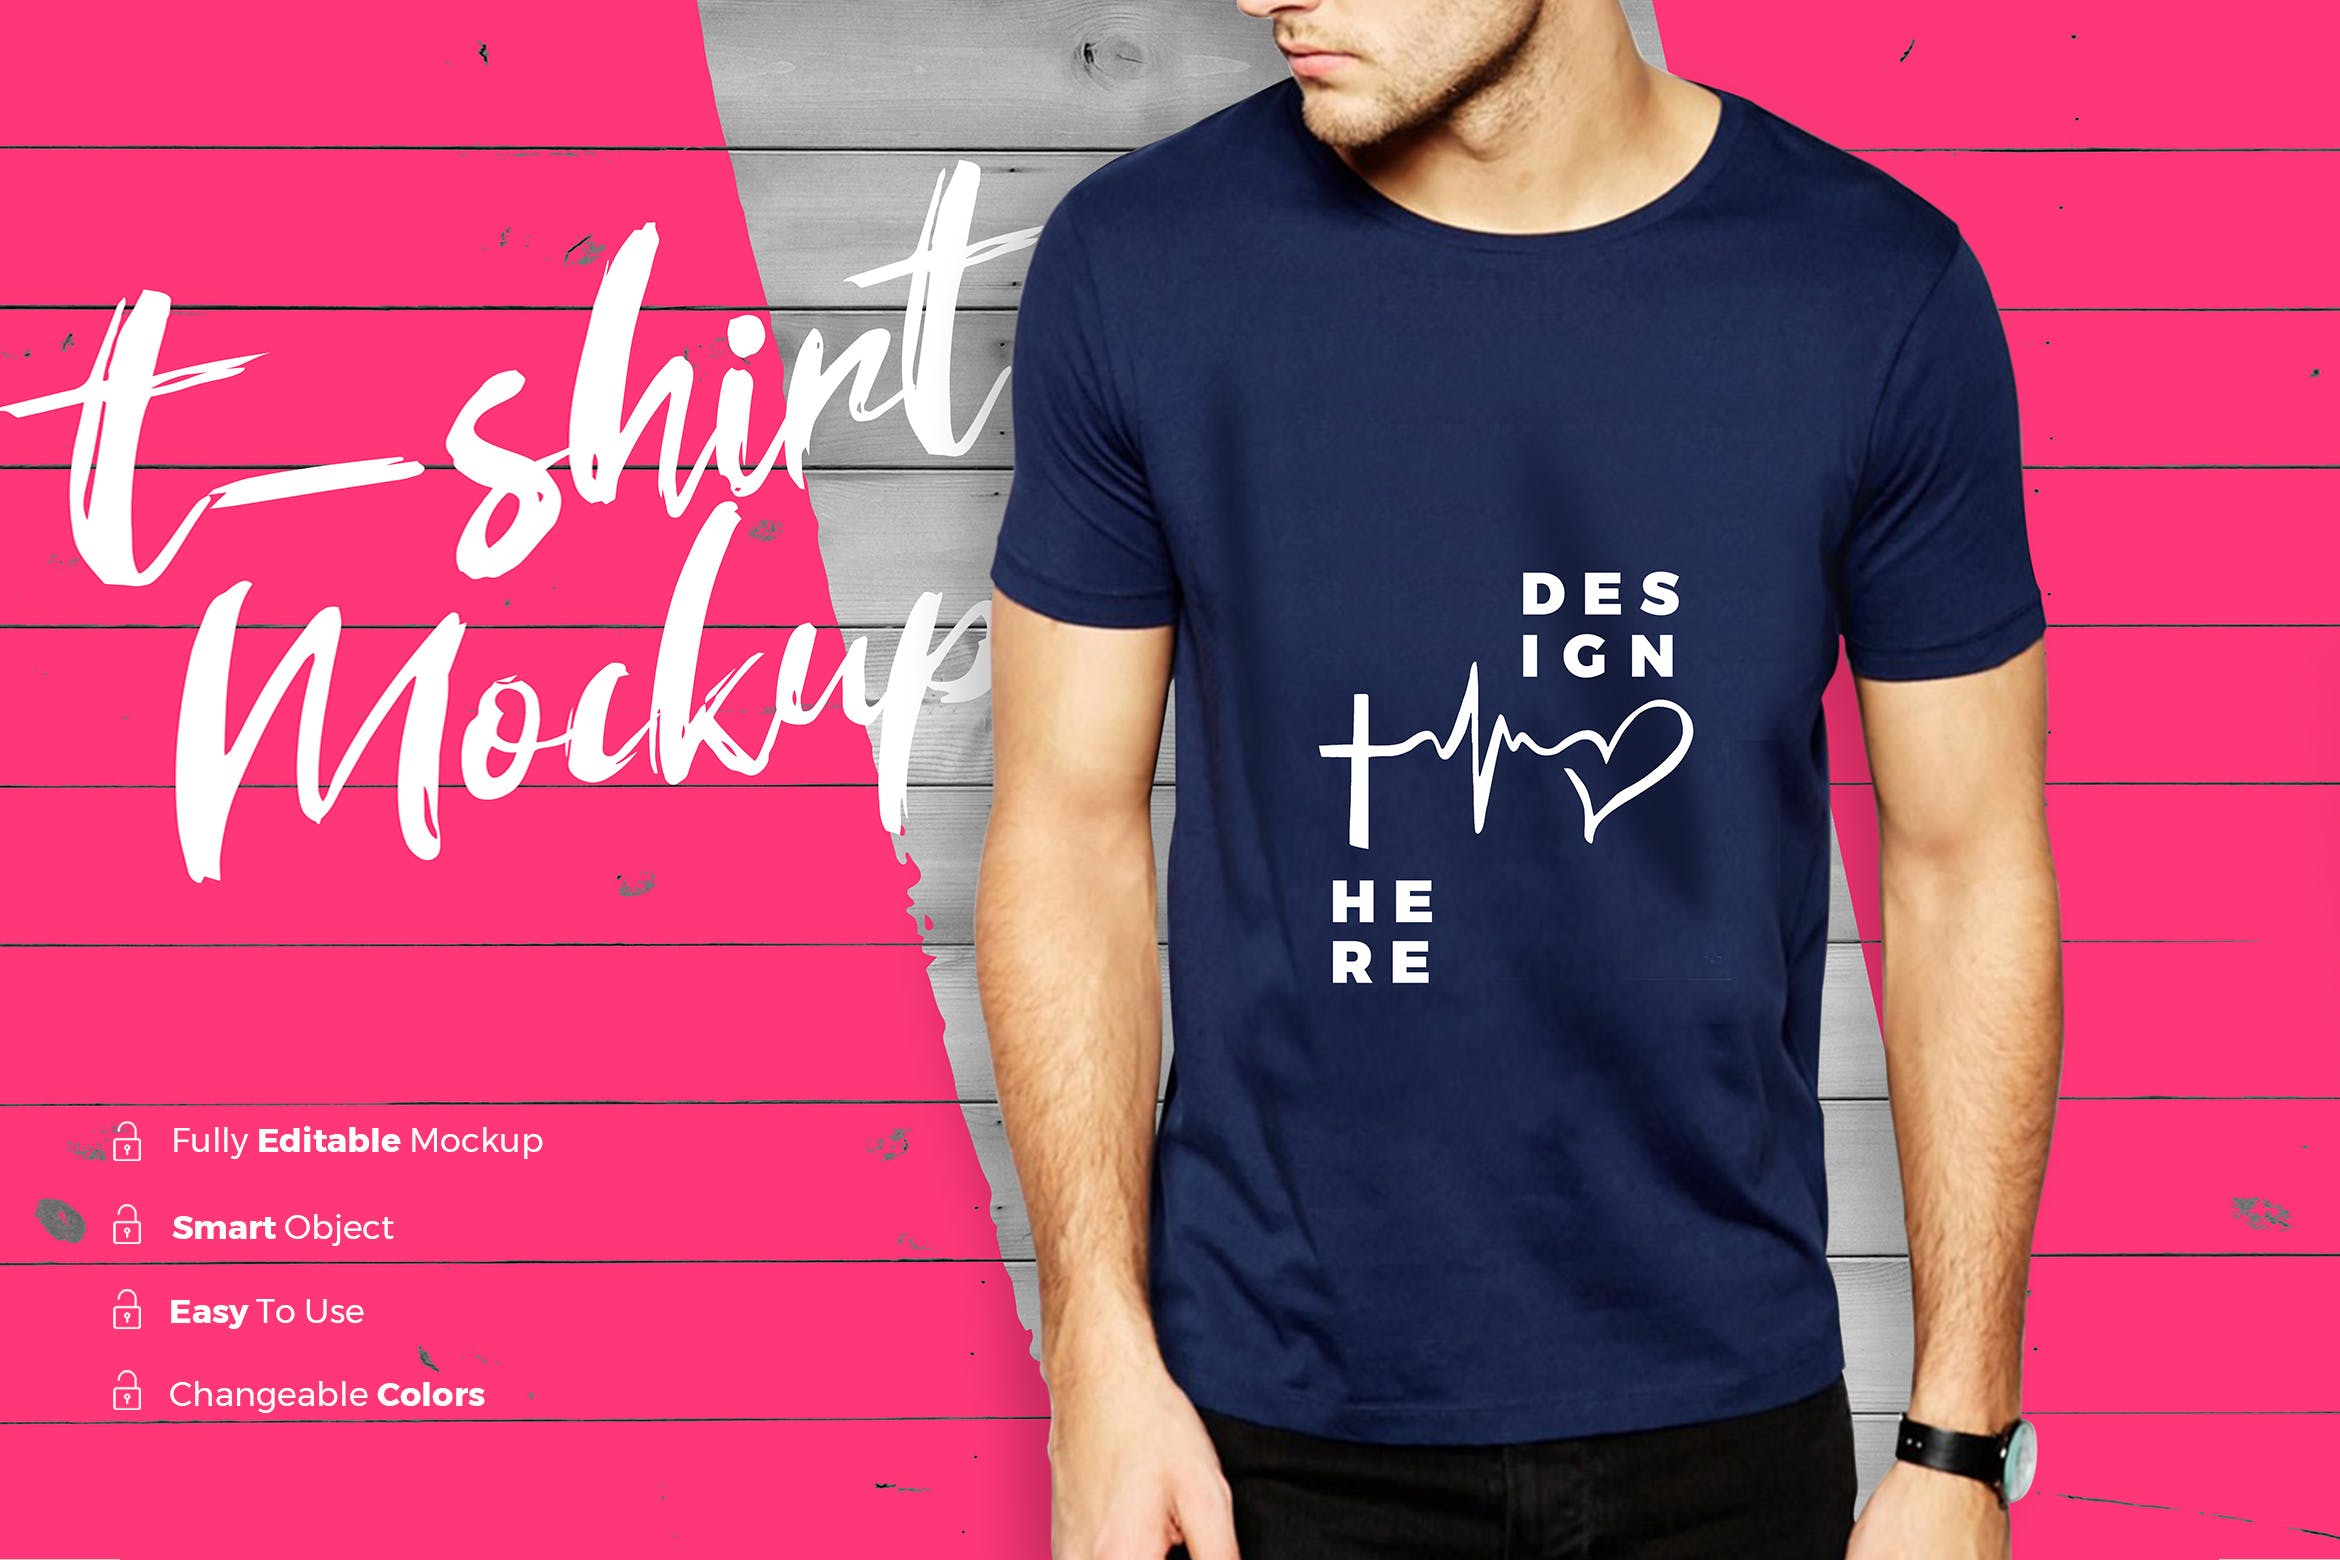 男士潮流时尚T恤印花图案设计展示样机16设计网精选 TShirt Mockup插图